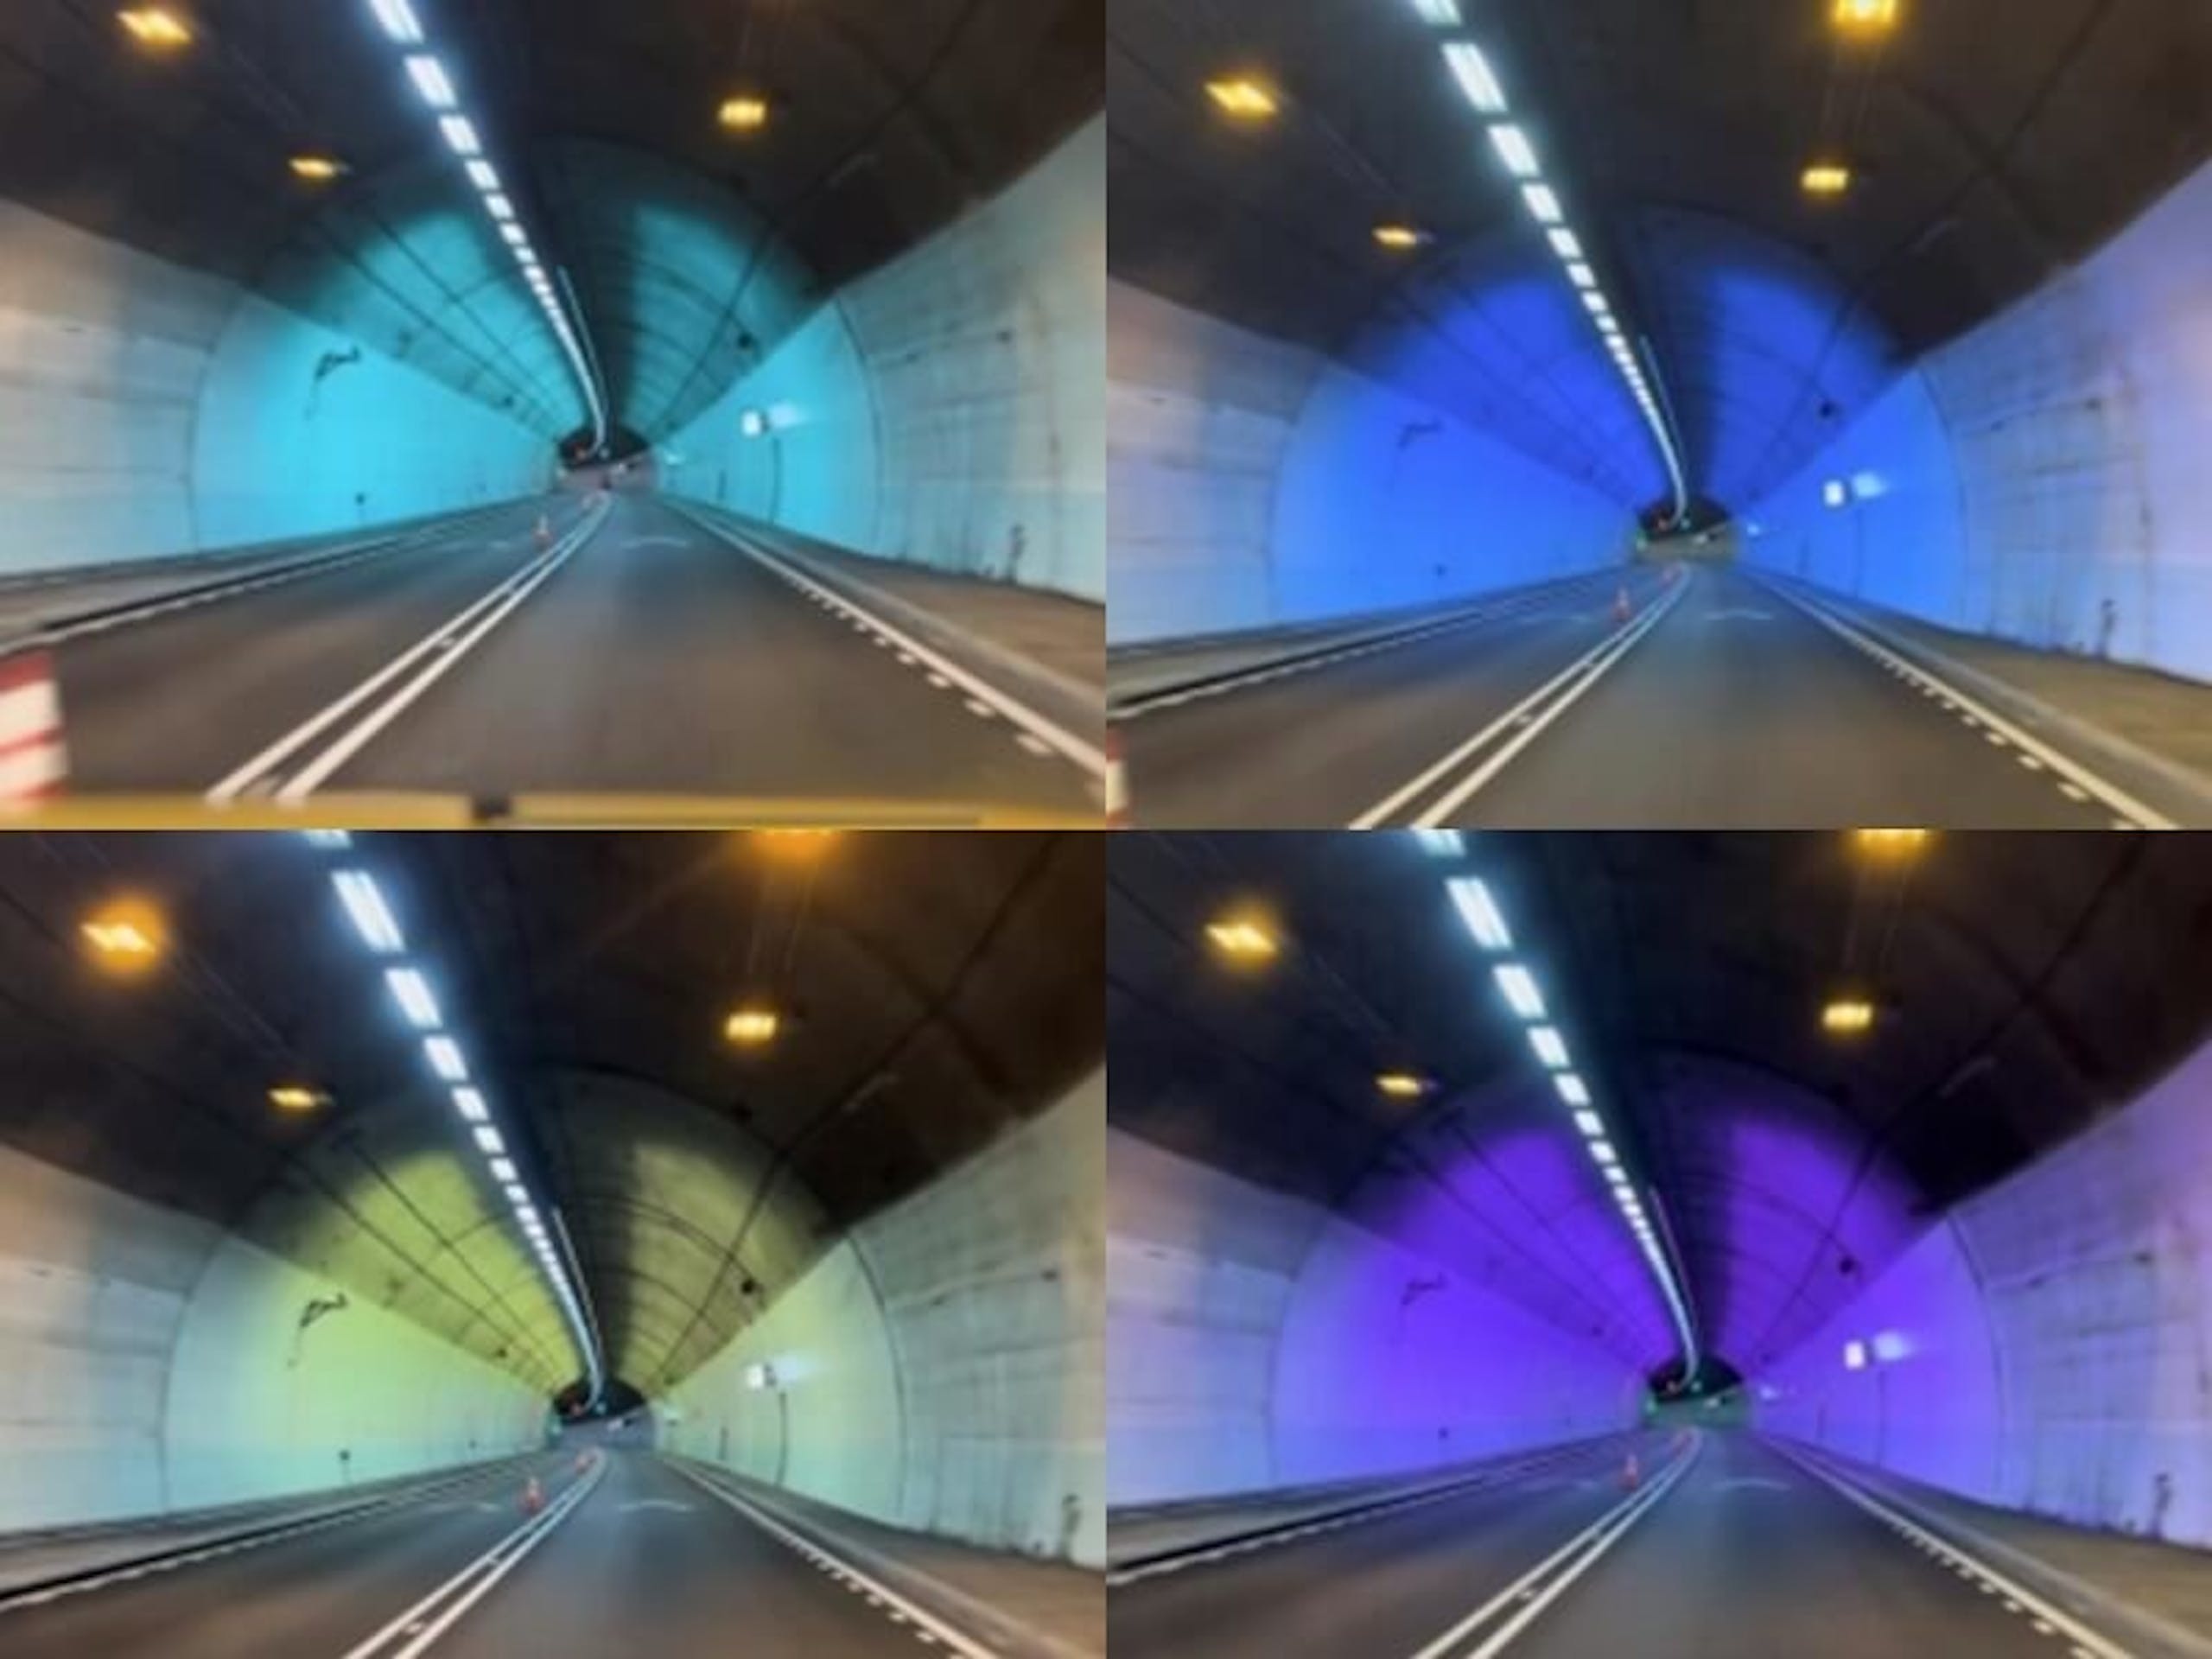 緩解駕駛疲勞台北宜蘭雪隧將試行彩虹隧道且有10種燈光情境模式 雪山隧道 16 Cool3c